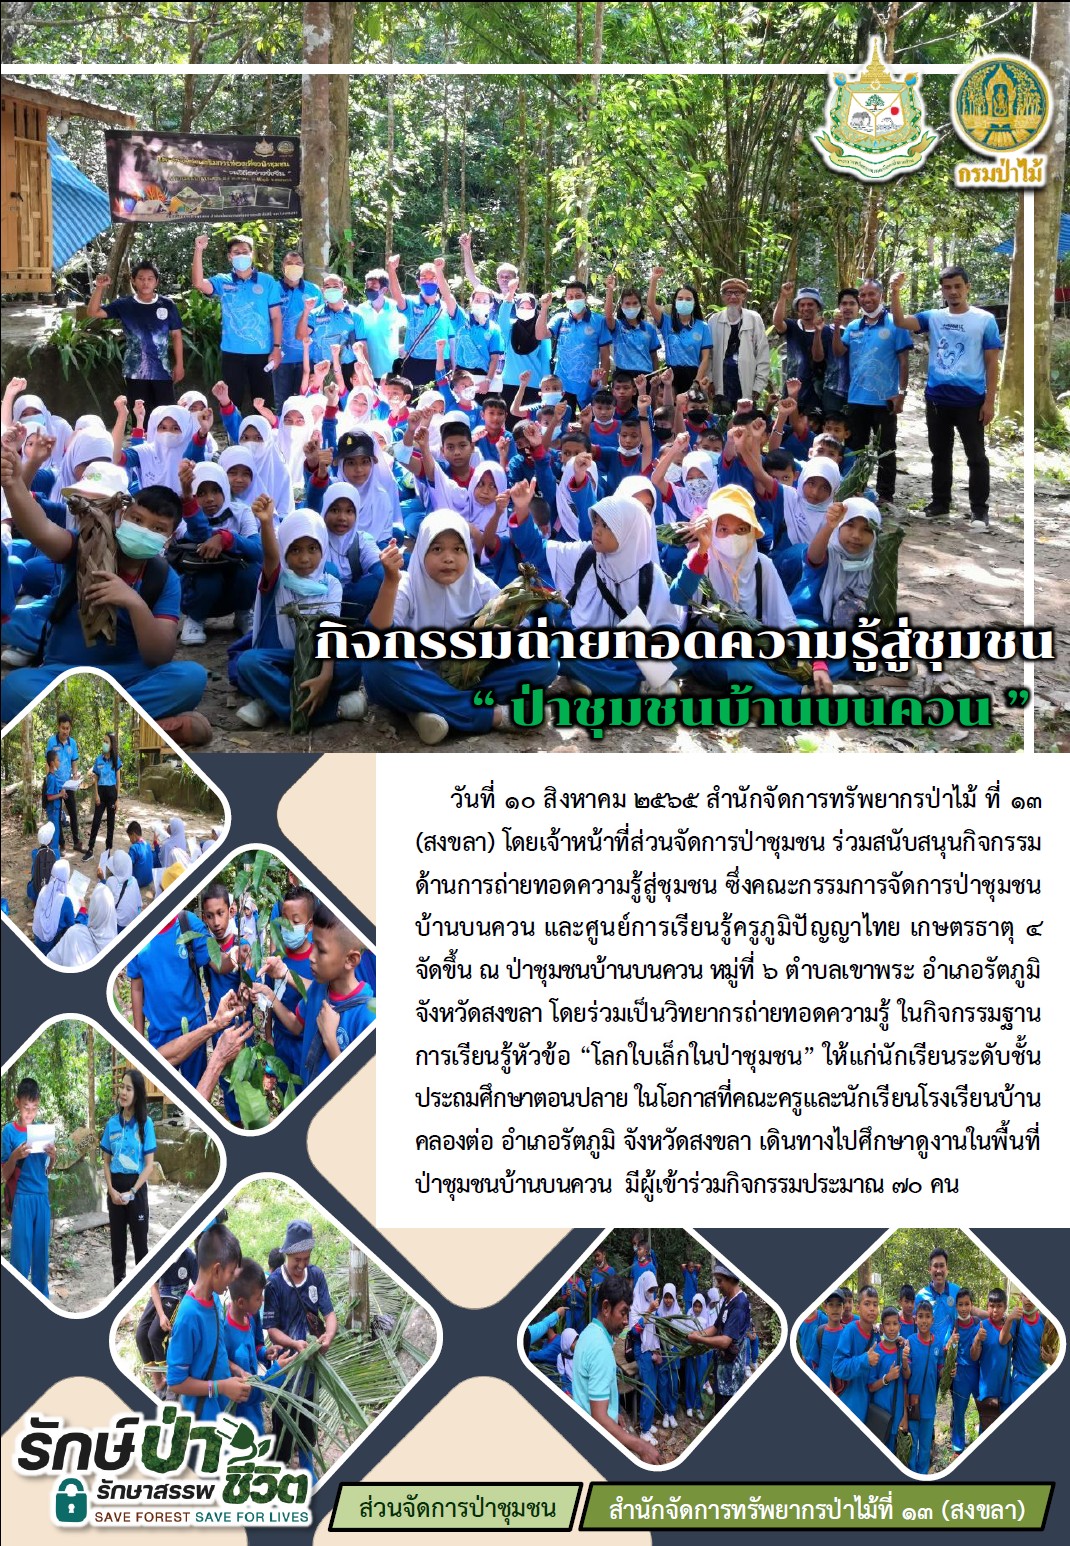 กิจกรรมด้านการถ่ายทอดความรู้สู่ชุมชน ซึ่งคณะกรรมการจัดการป่าชุมชนบ้านบนควน และศูนย์การเรียนรู้ครูภูมิปัญญาไทย เกษตรธาตุ 4 จัดขึ้น ณ ป่าชุมชนบ้านบนควน หมู่ที่ 6 ตำบลเขาพระ อำเภอรัตภูมิ